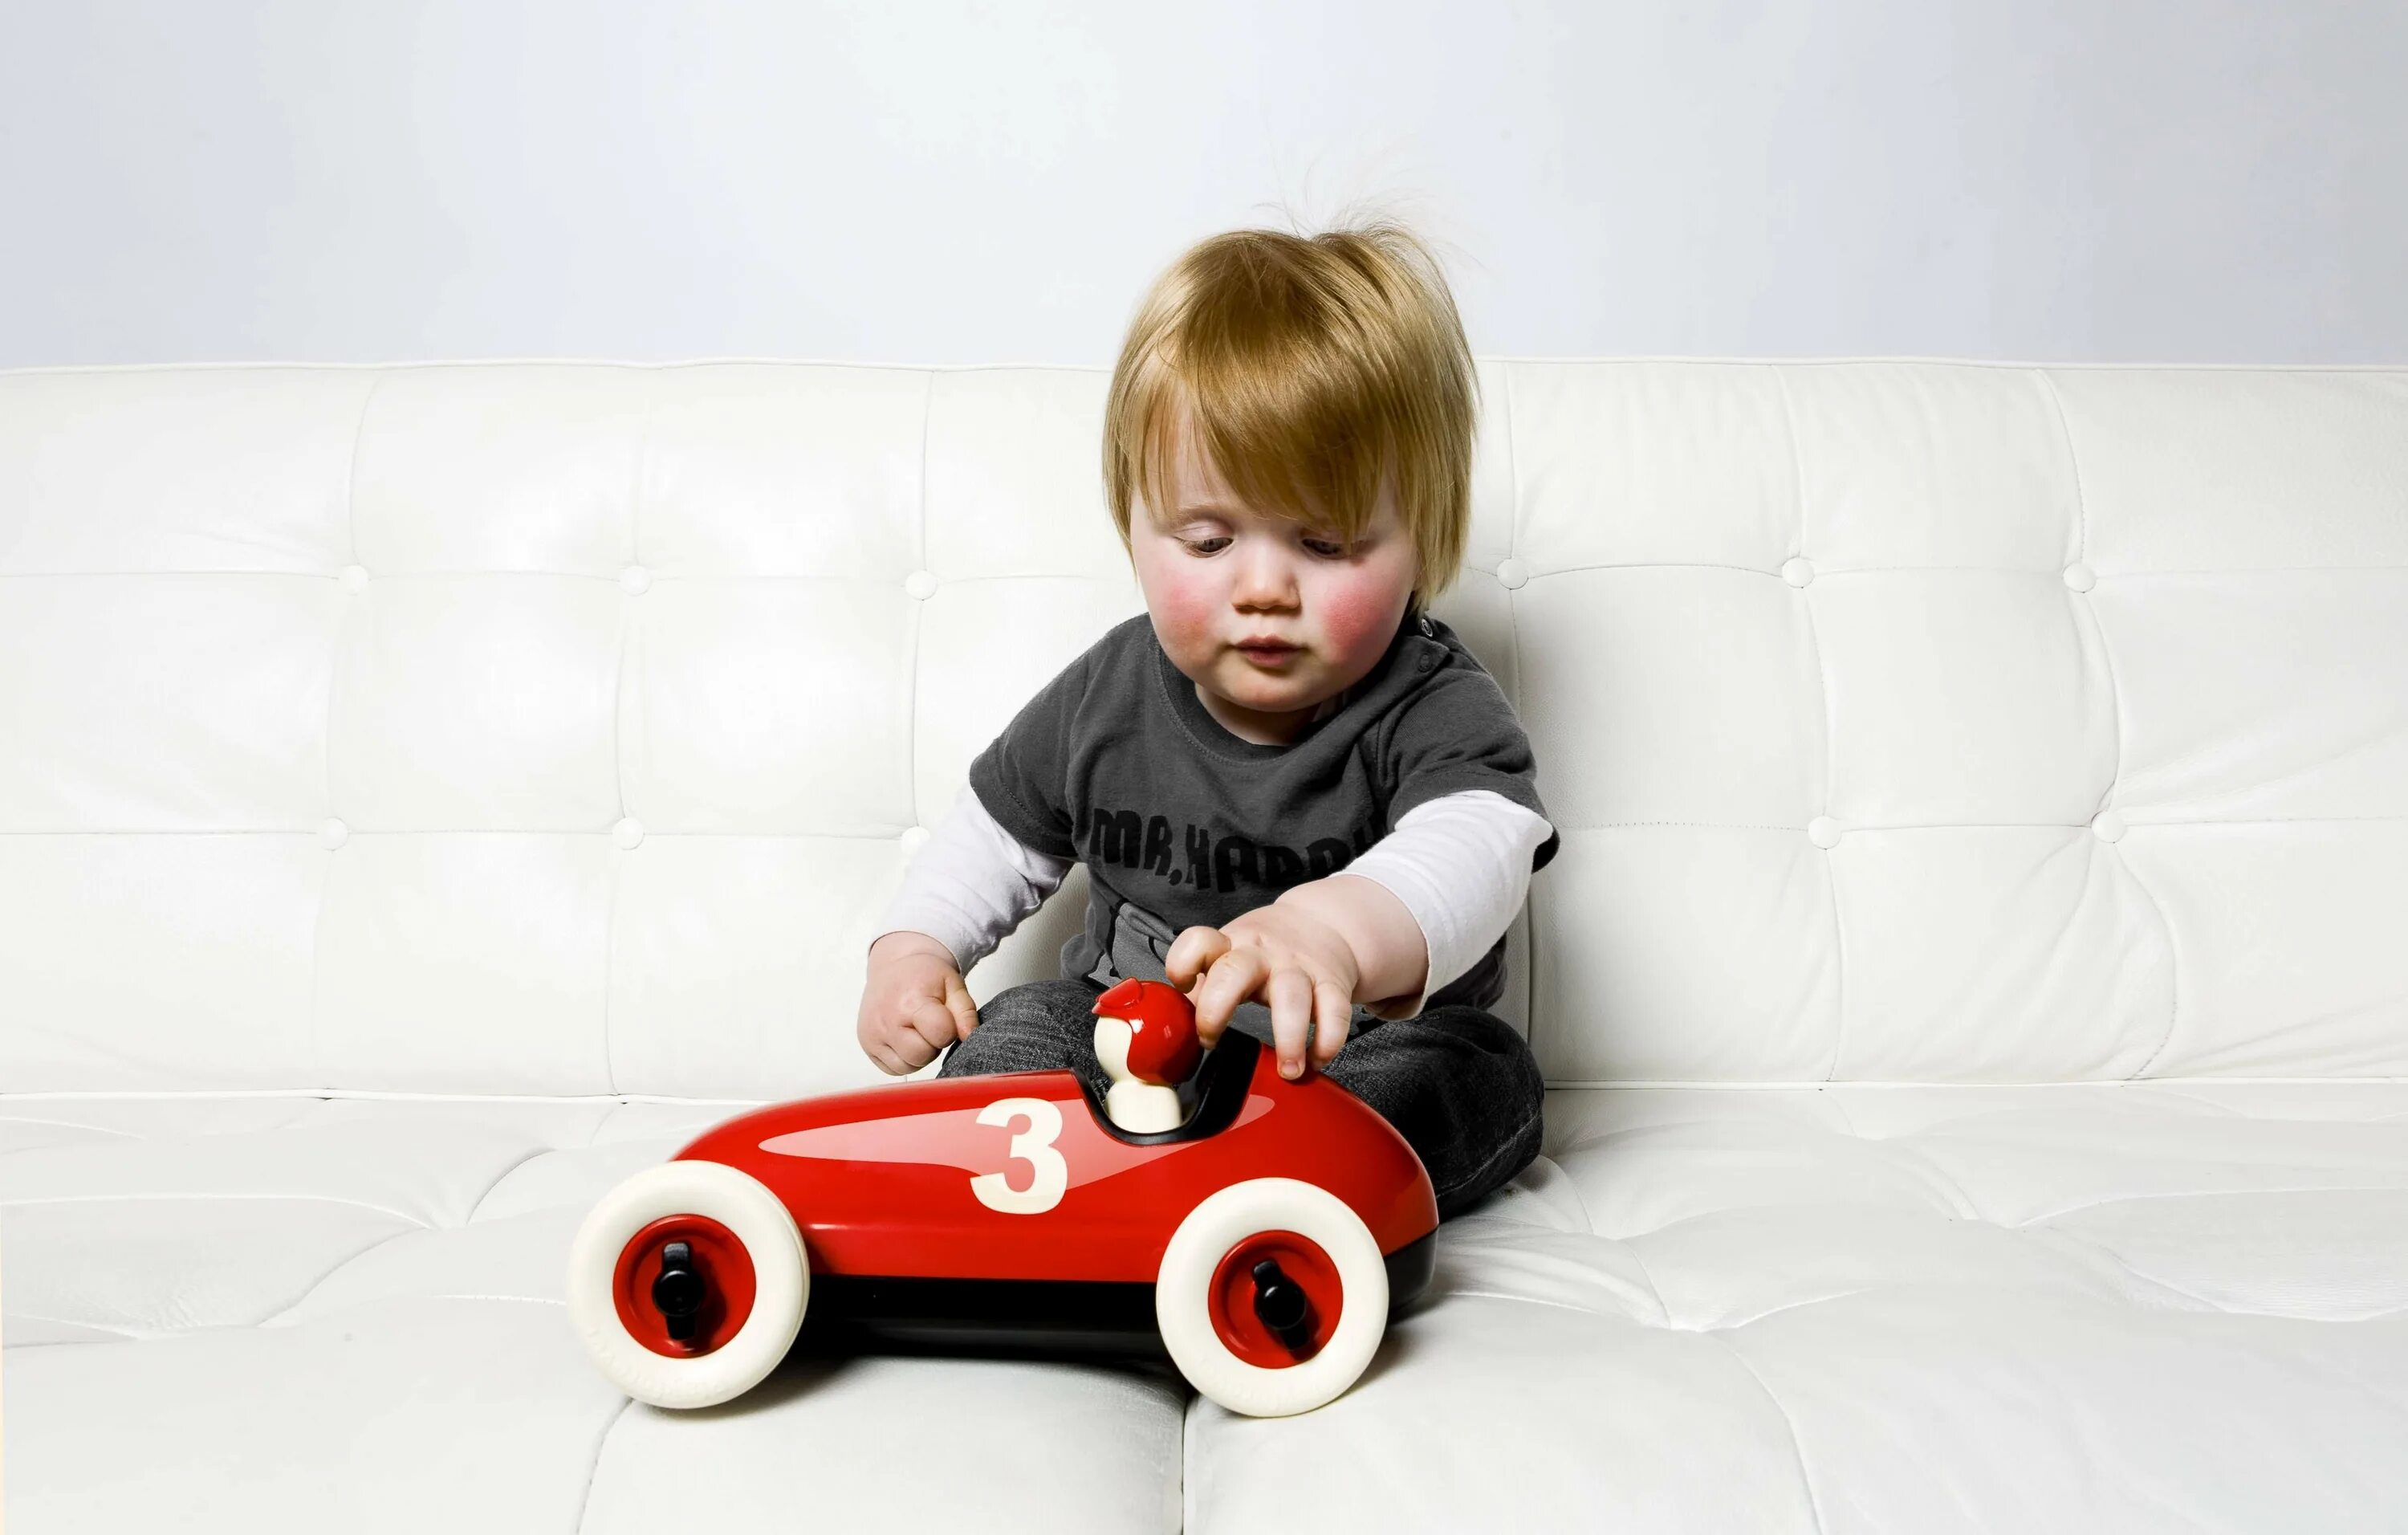 Toys toys машина. Baby Toy car. Игрушка Baby on the car. Детские игрушки в комнате машинки. Маленькийребёнок в игрушечной машине.